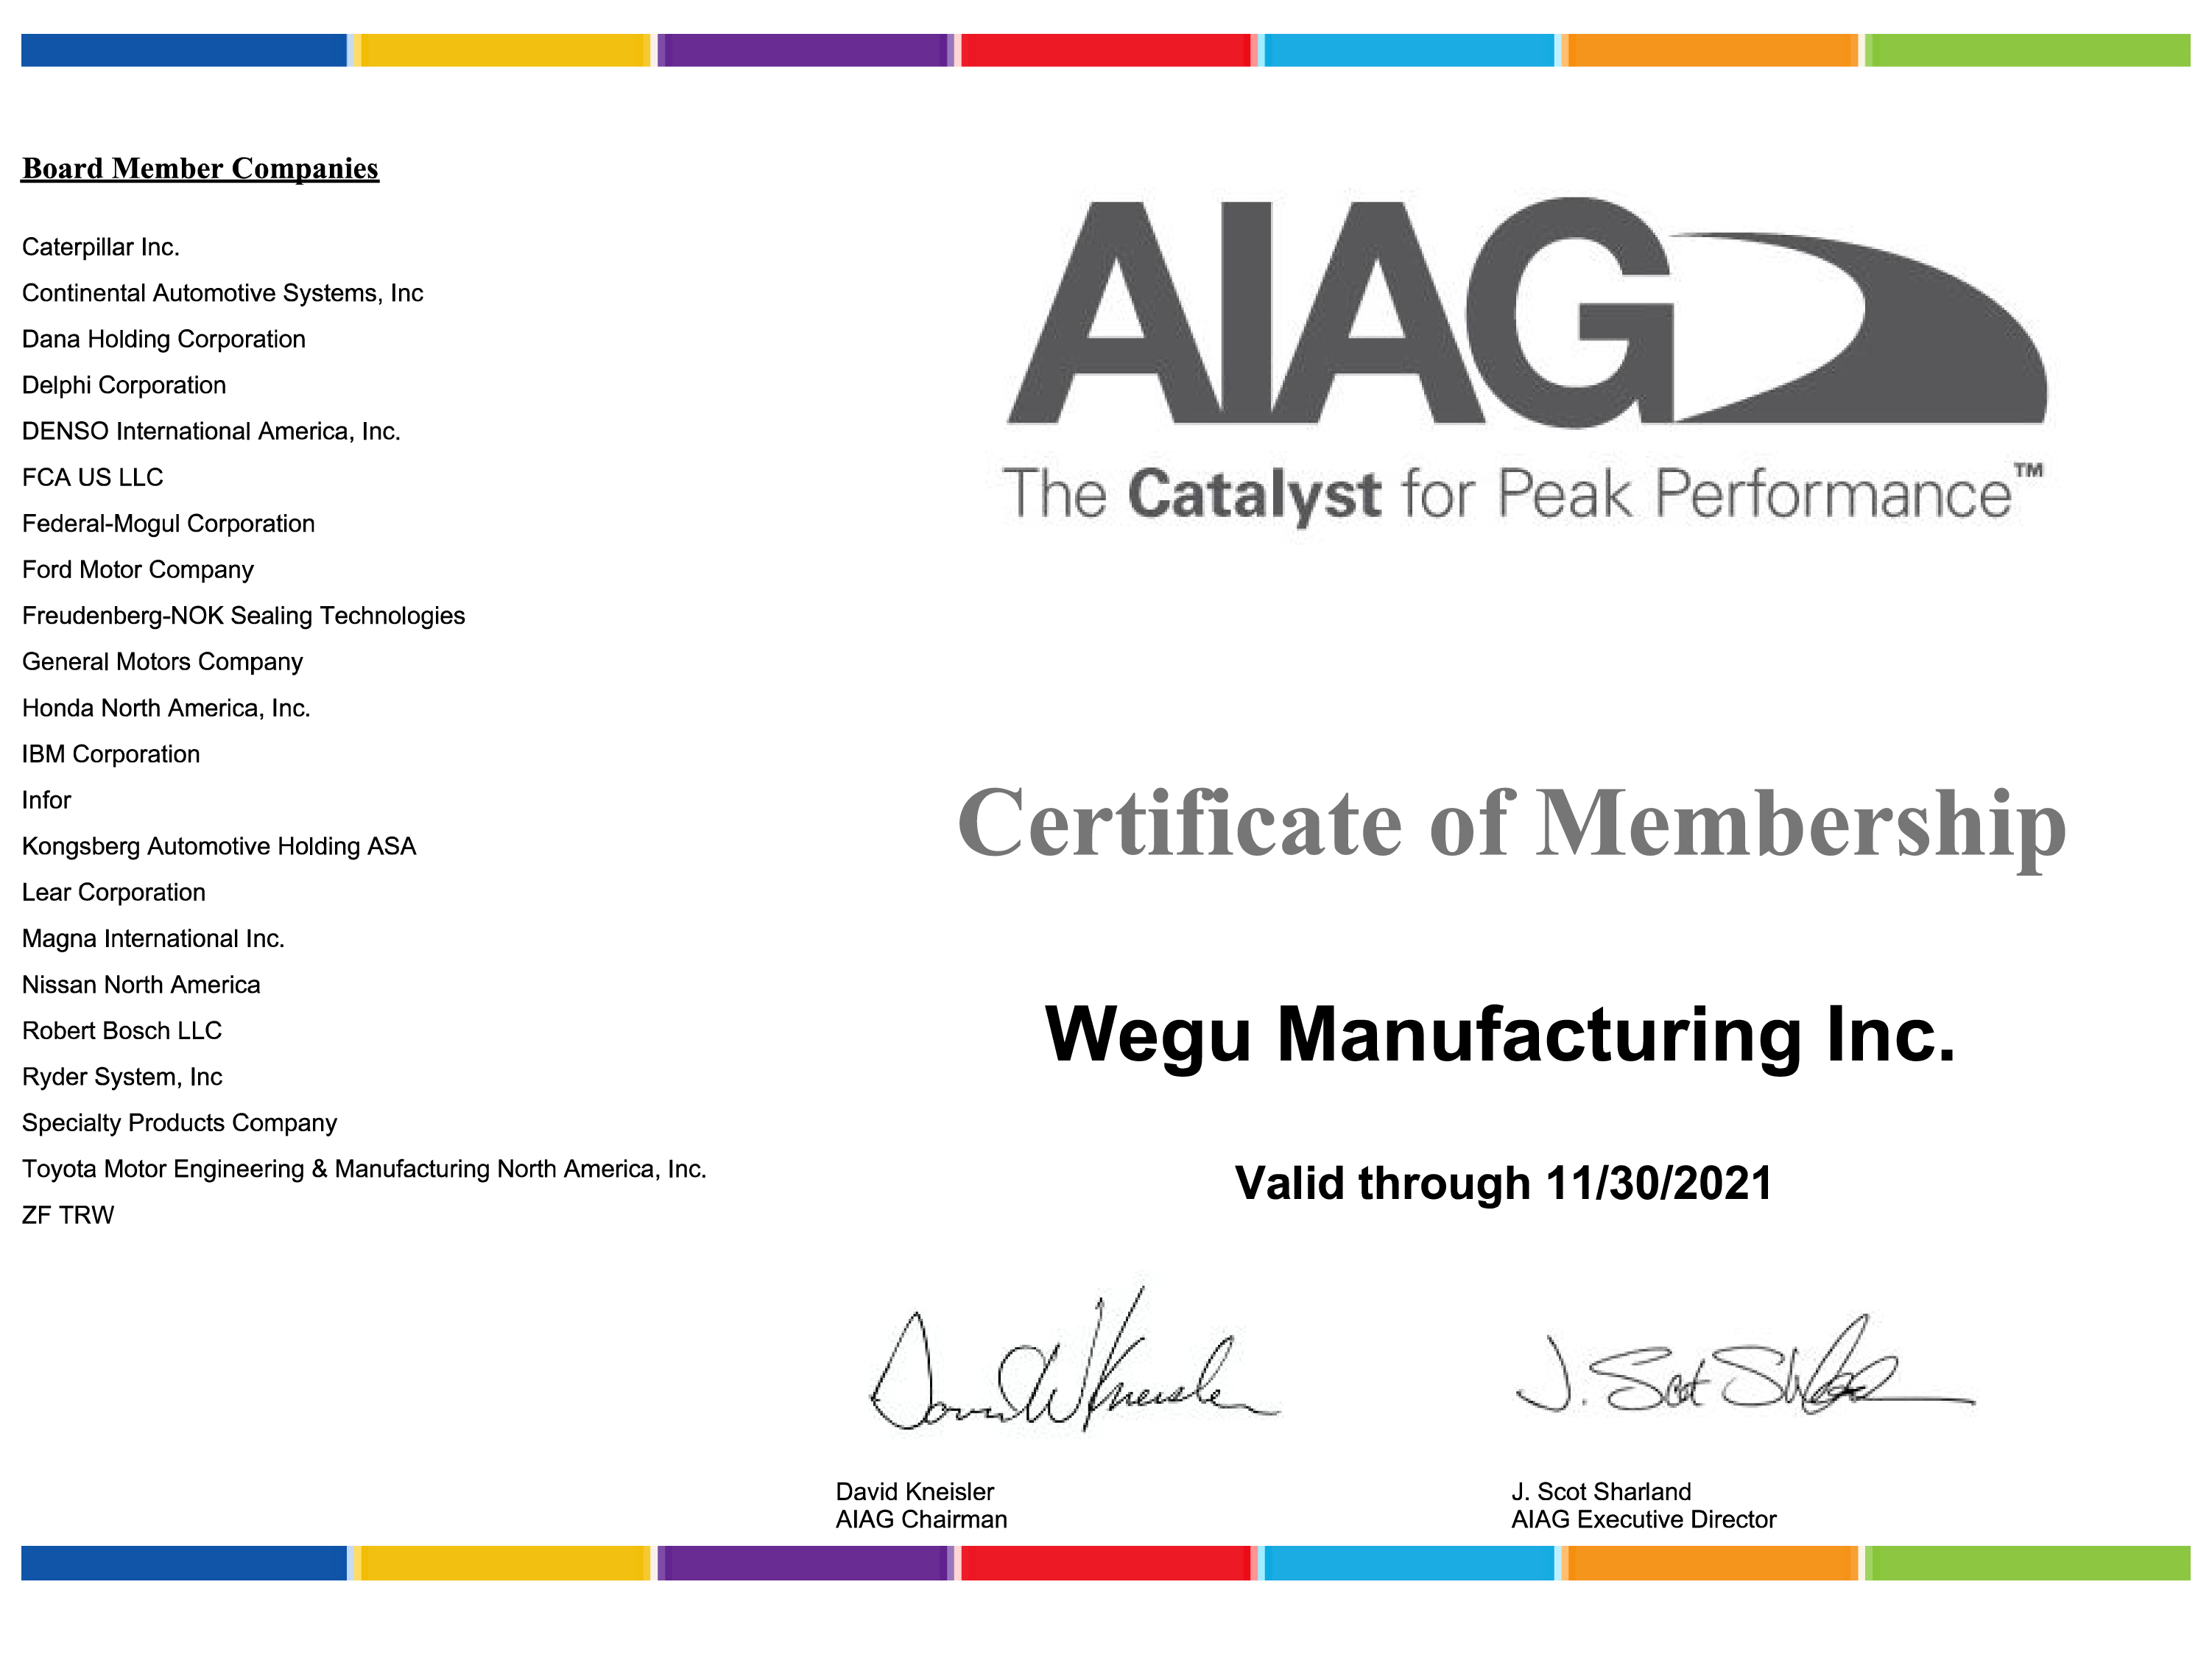 Wegu Manufacturing AIAG Sponsored Member